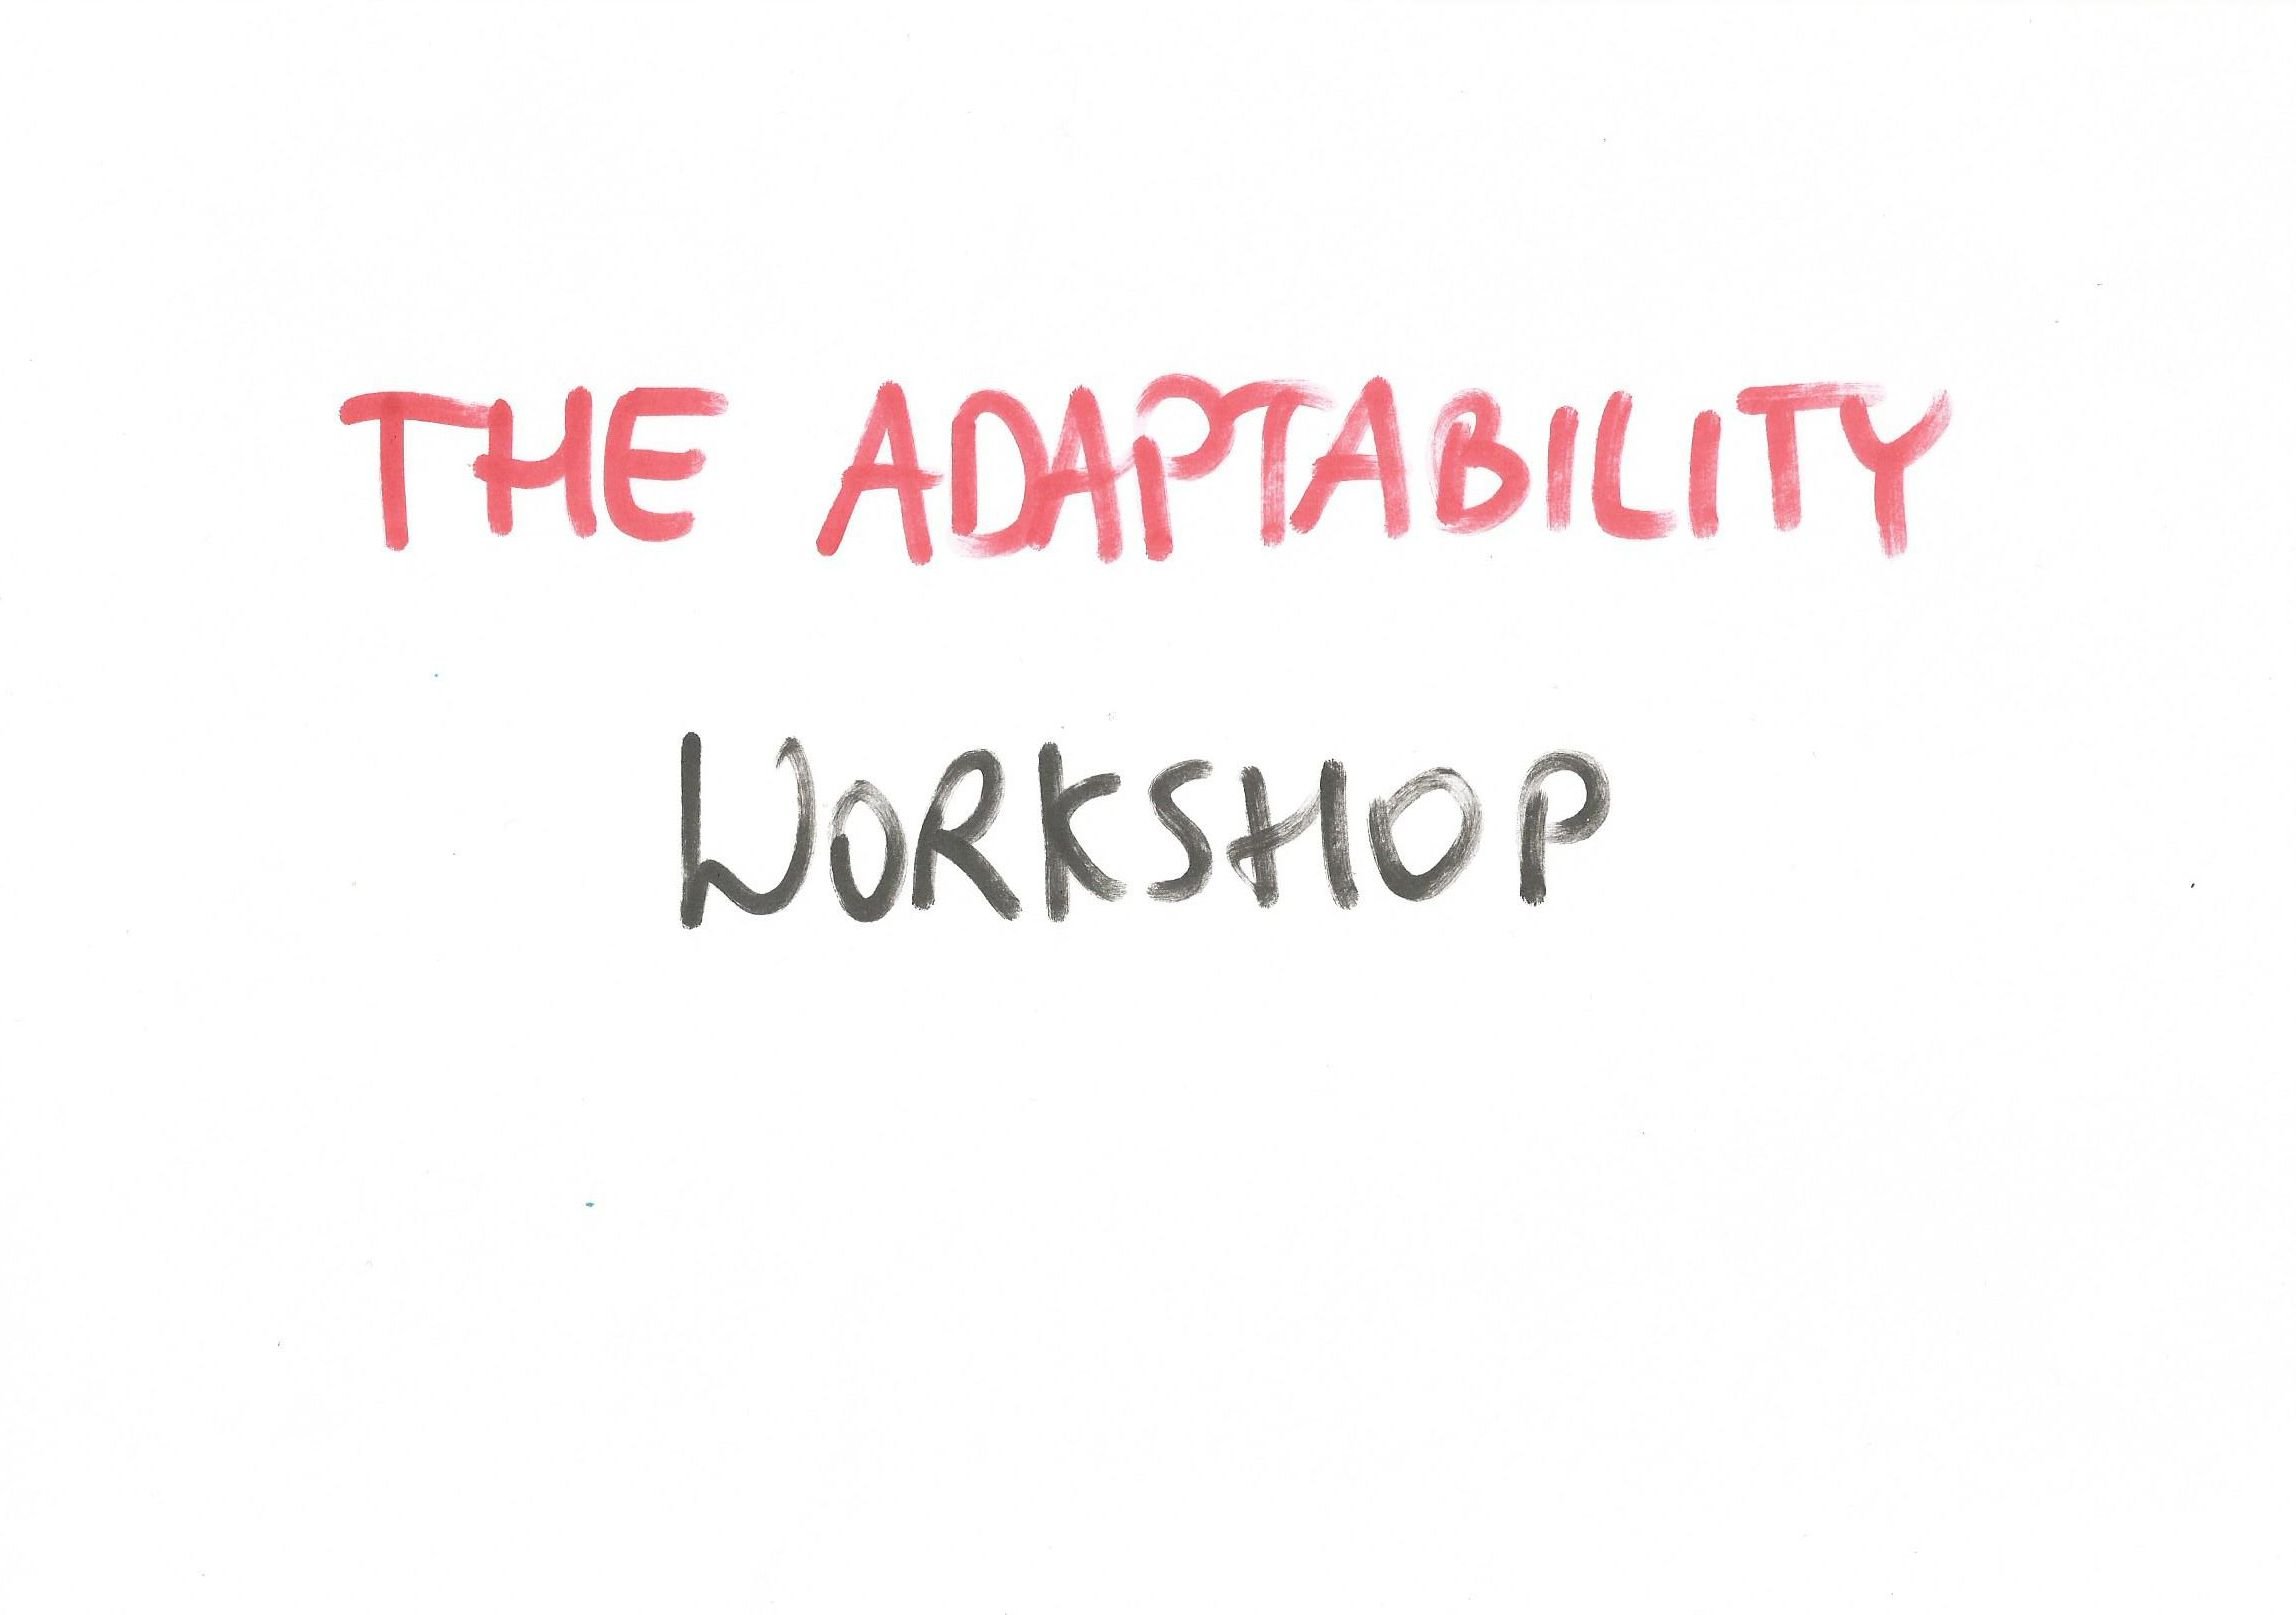 The adaptability Workshop by Witold Wisniewski